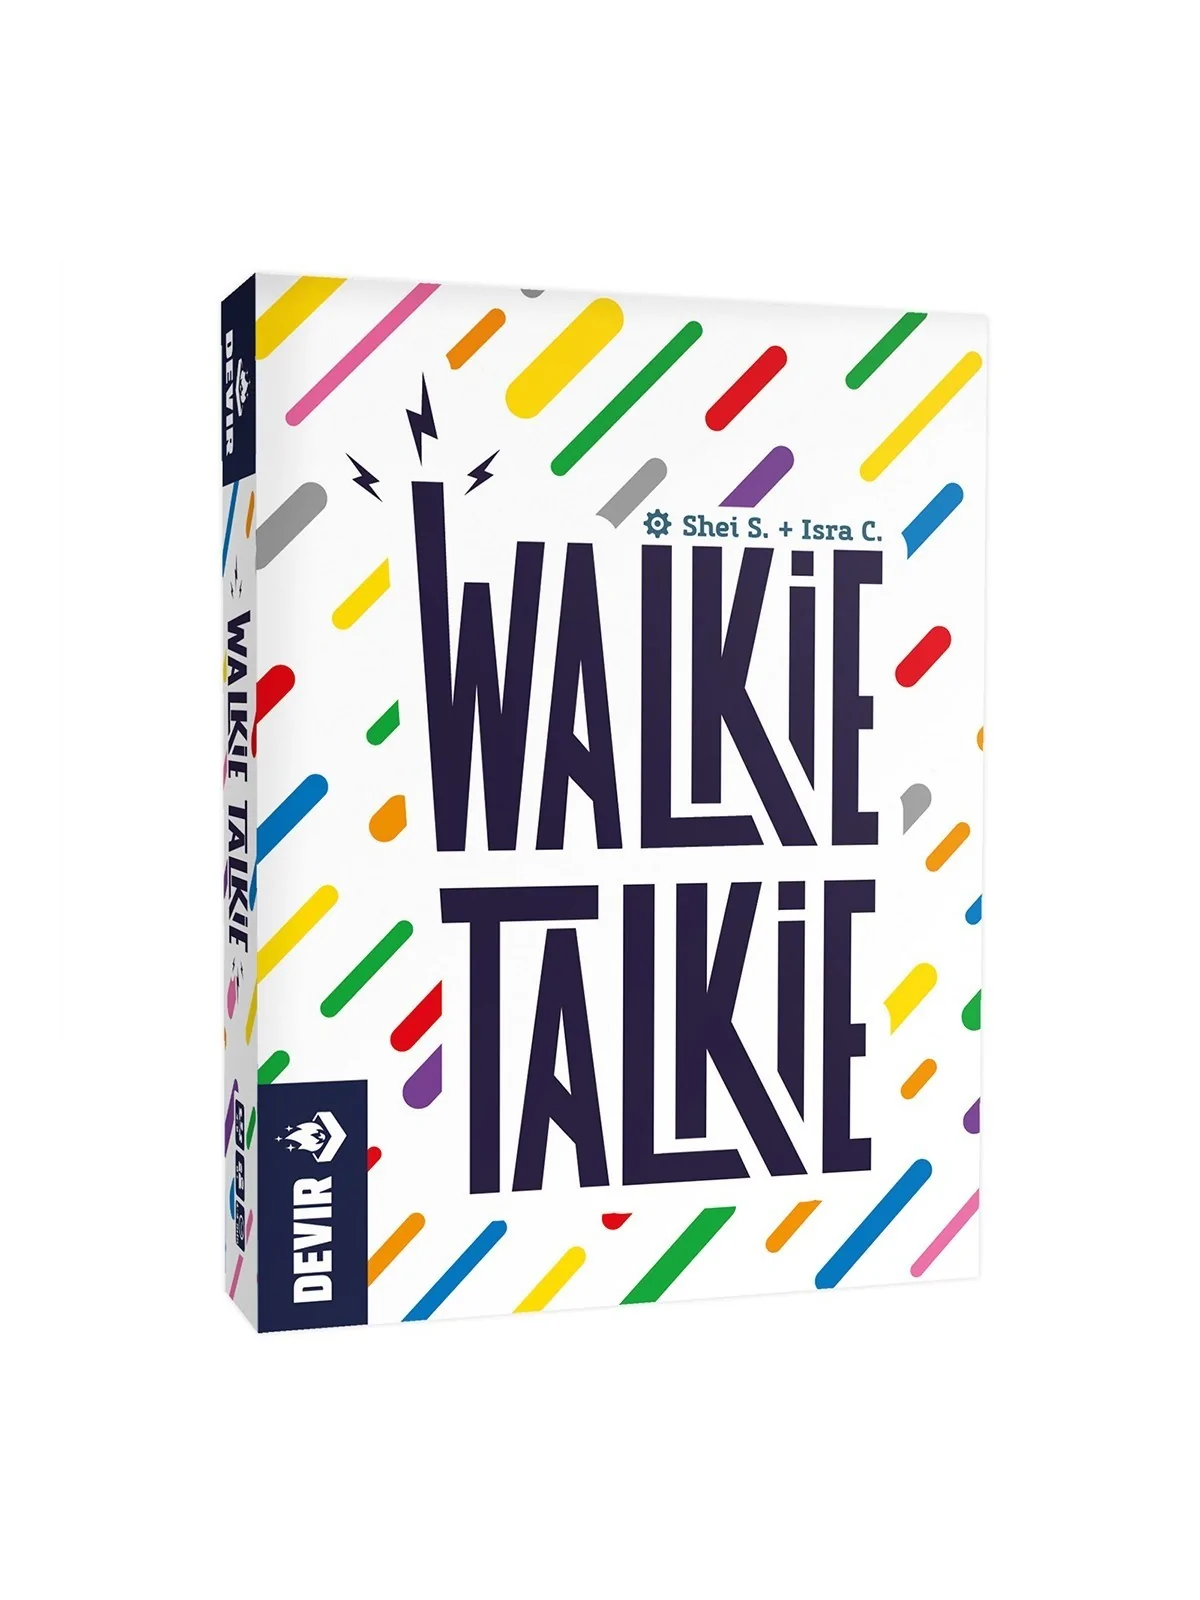 Comprar Walkie Talkie barato al mejor precio 9,00 € de Devir